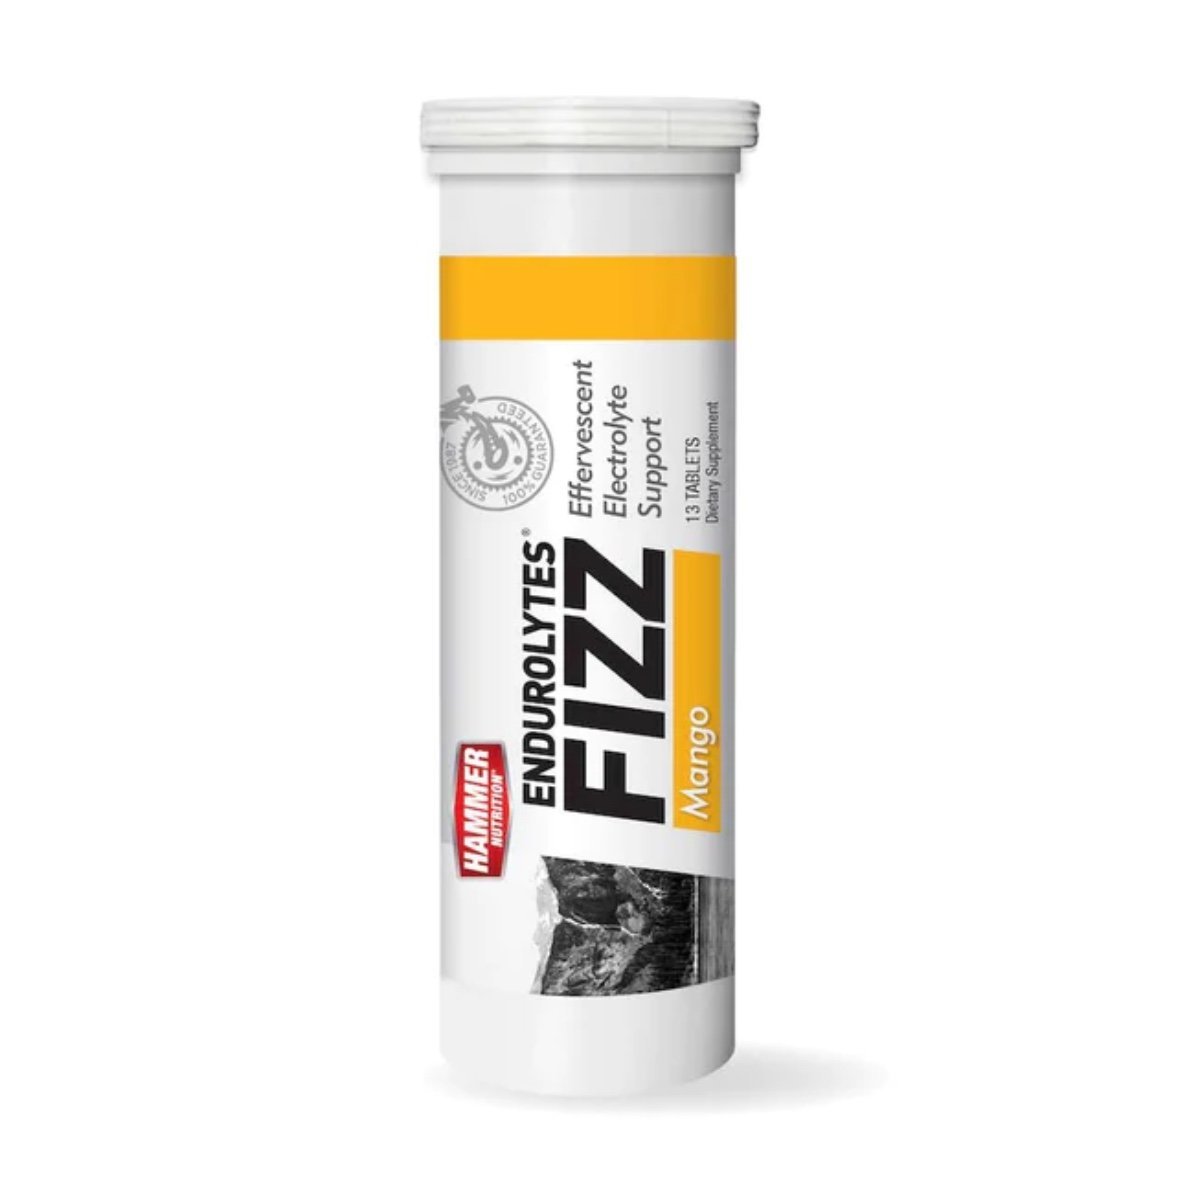 Šumivé tablety Hammer Endurolytes Fizz®, 100 g, mango